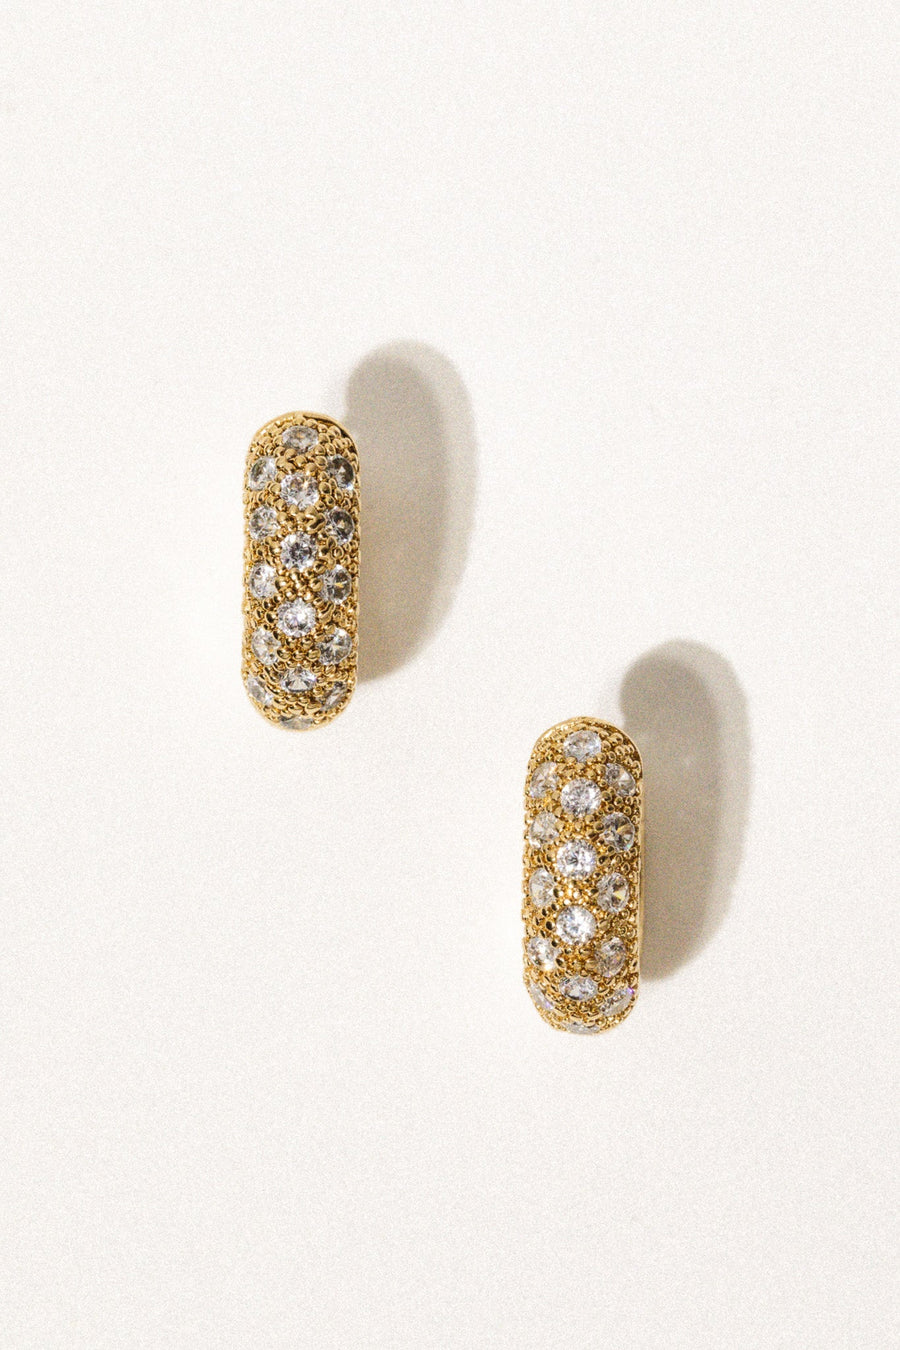 Goddess Jewelry Gold Honey Glow Earrings